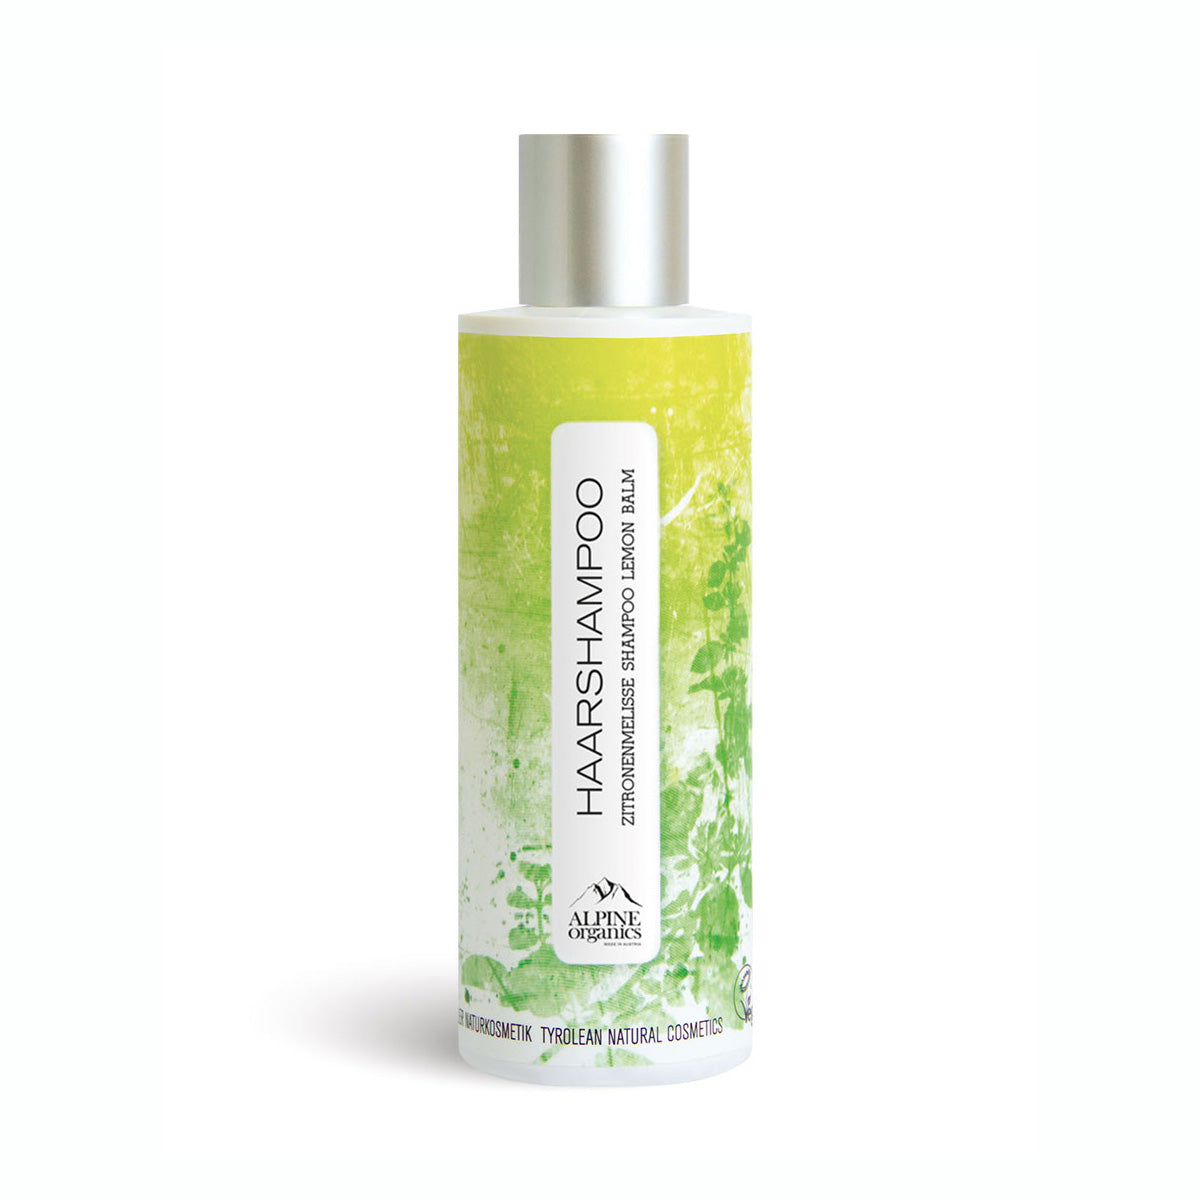 Shampoo 200 ml in verschiedenen Duftnoten 'Alpine Organics' - gefertigt in Österreich